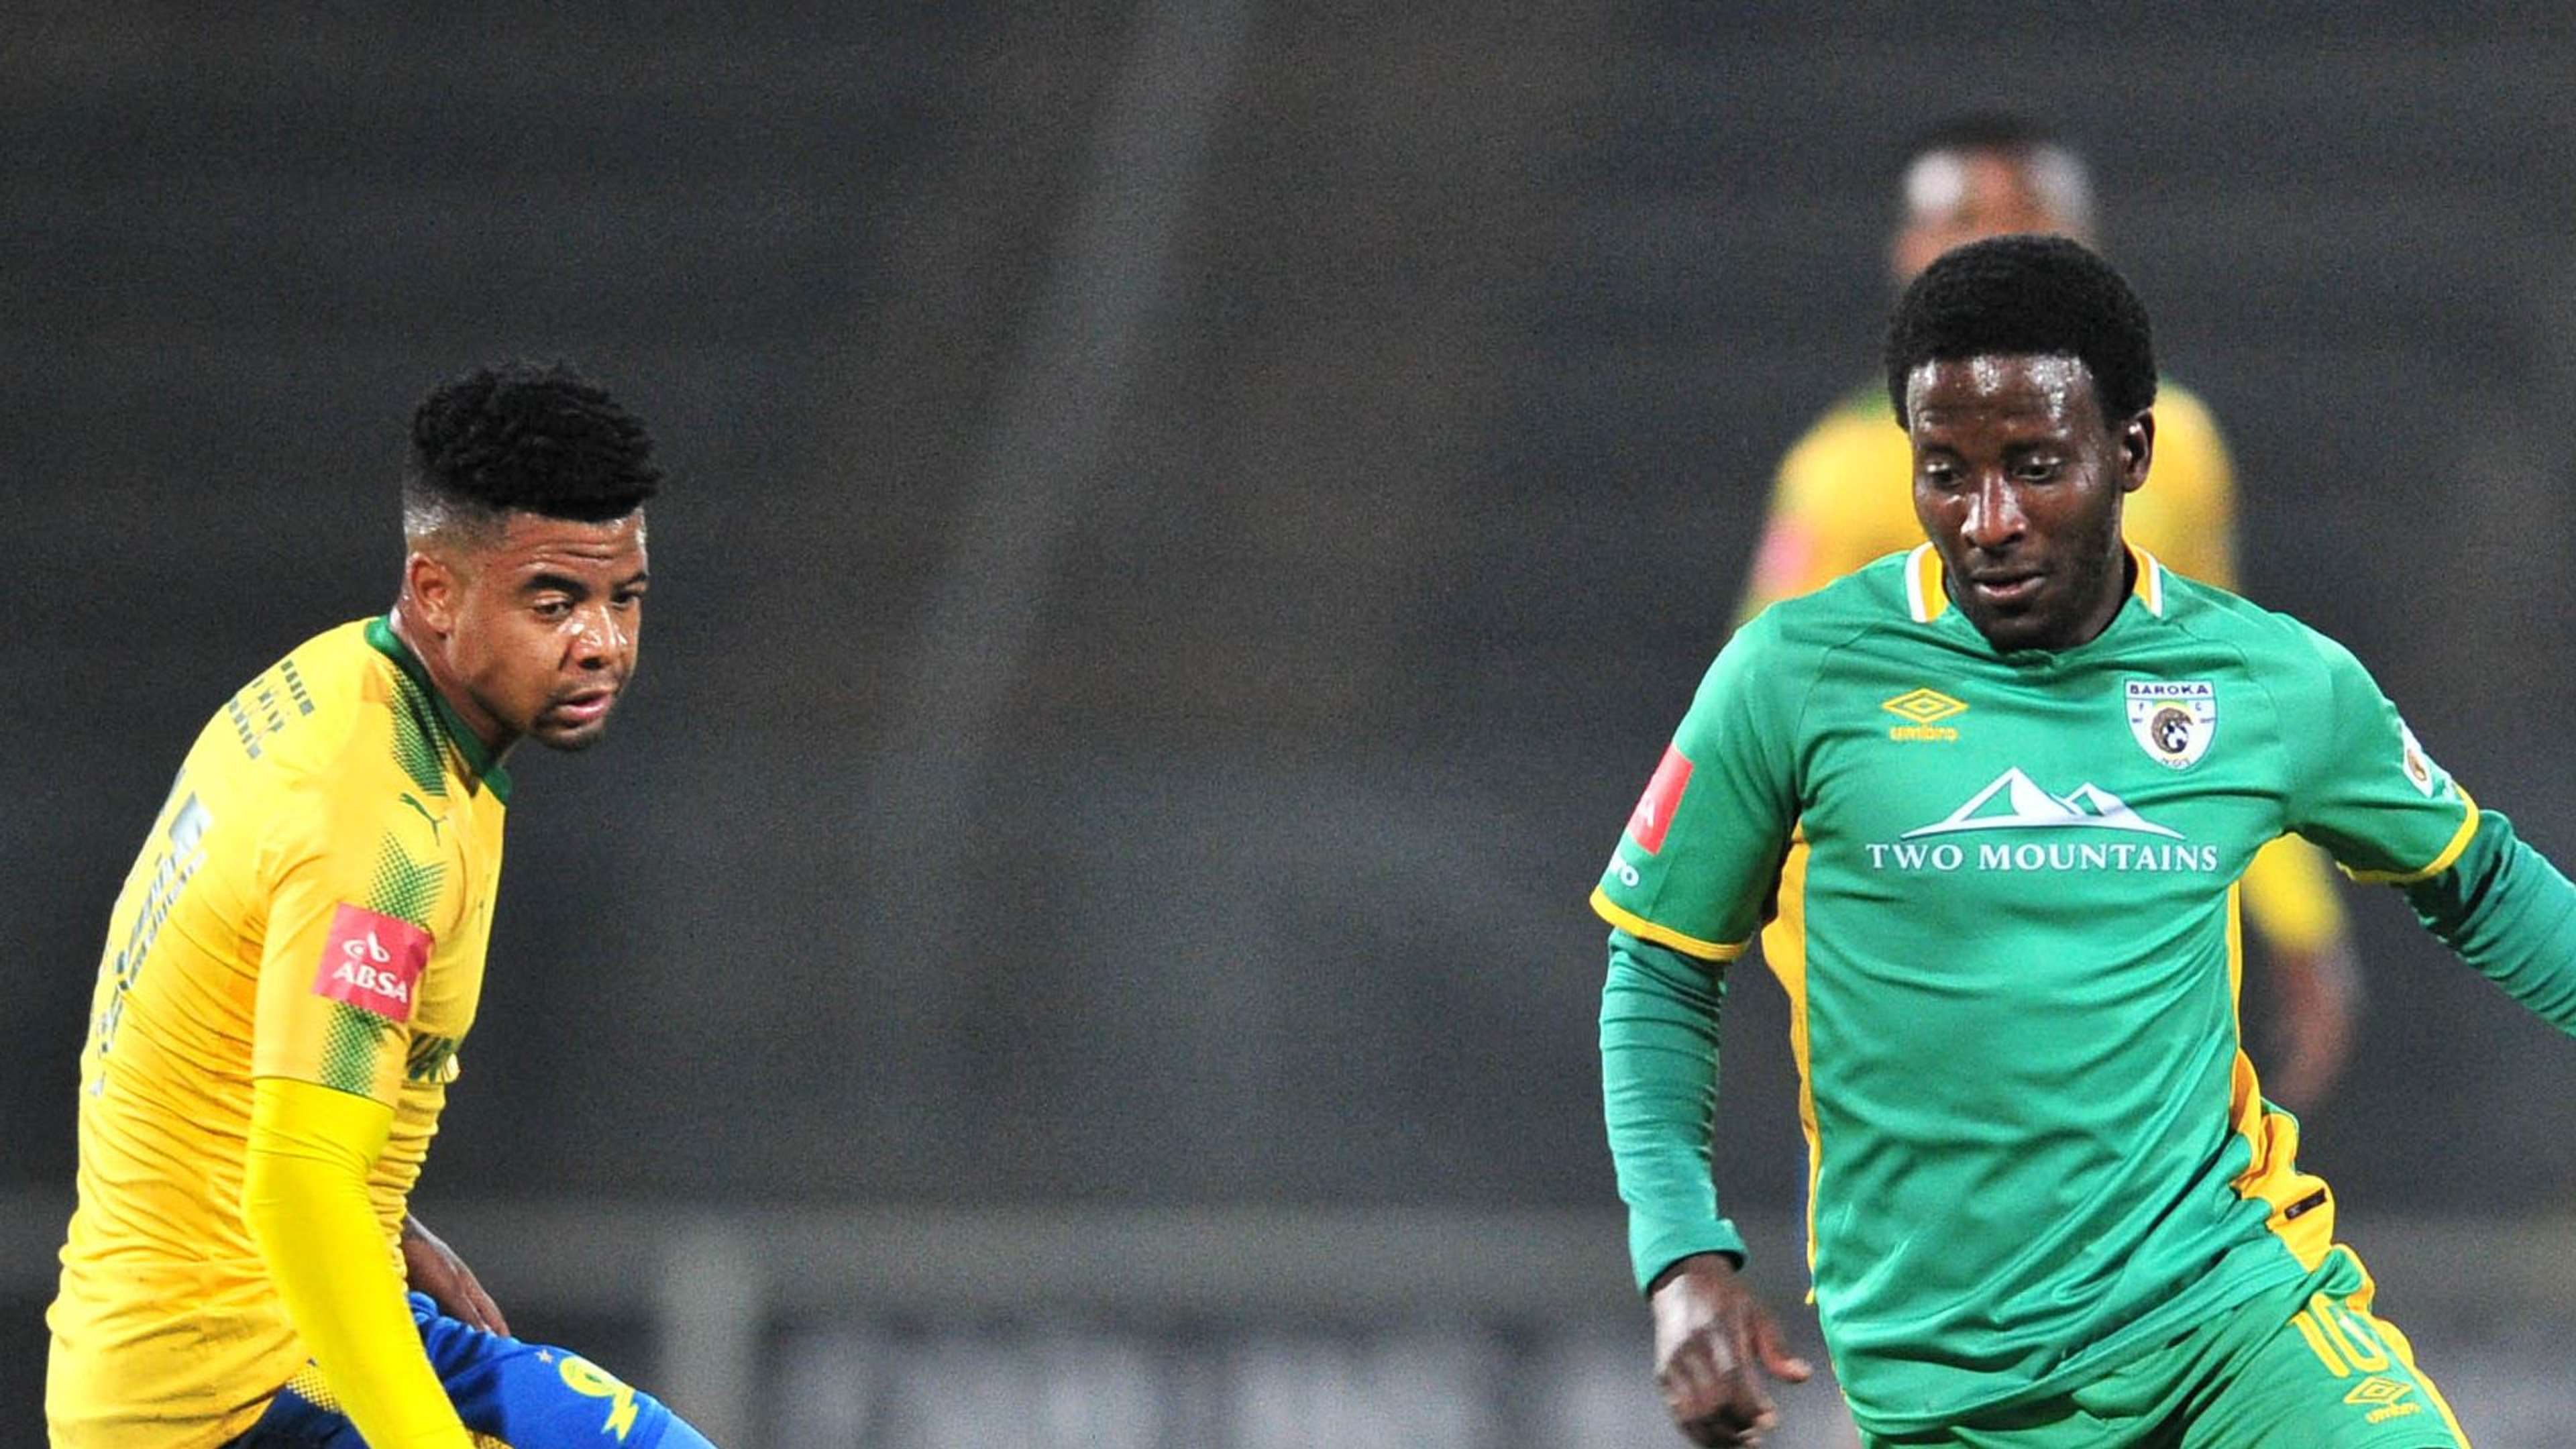 Siphelele Ntshangase of Baroka FC challenged by George Lebese of Mamelodi Sundowns